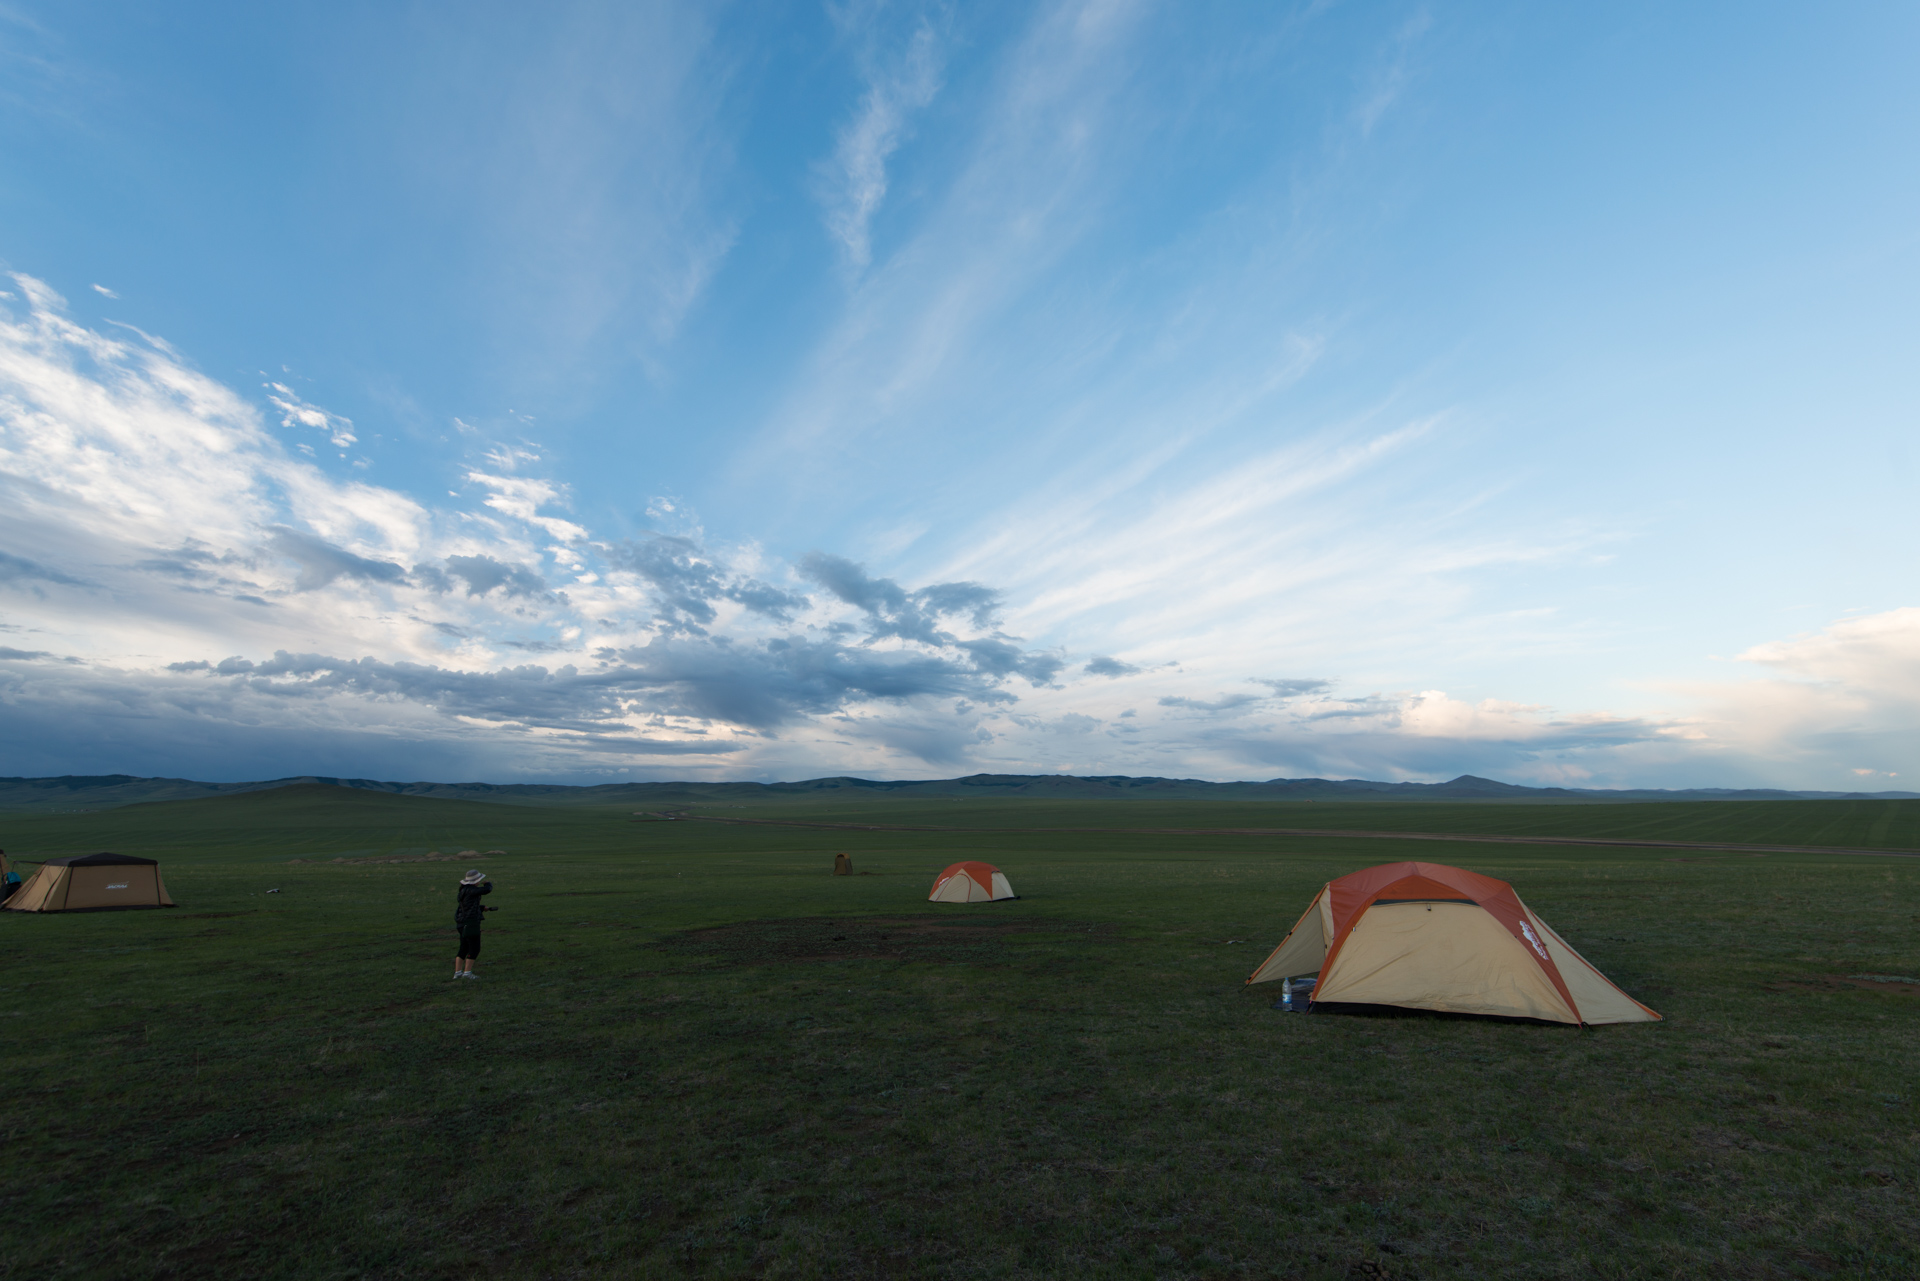 150728_038.jpg : 몽골 학습탐사 2진 사진 7월28일 ...자